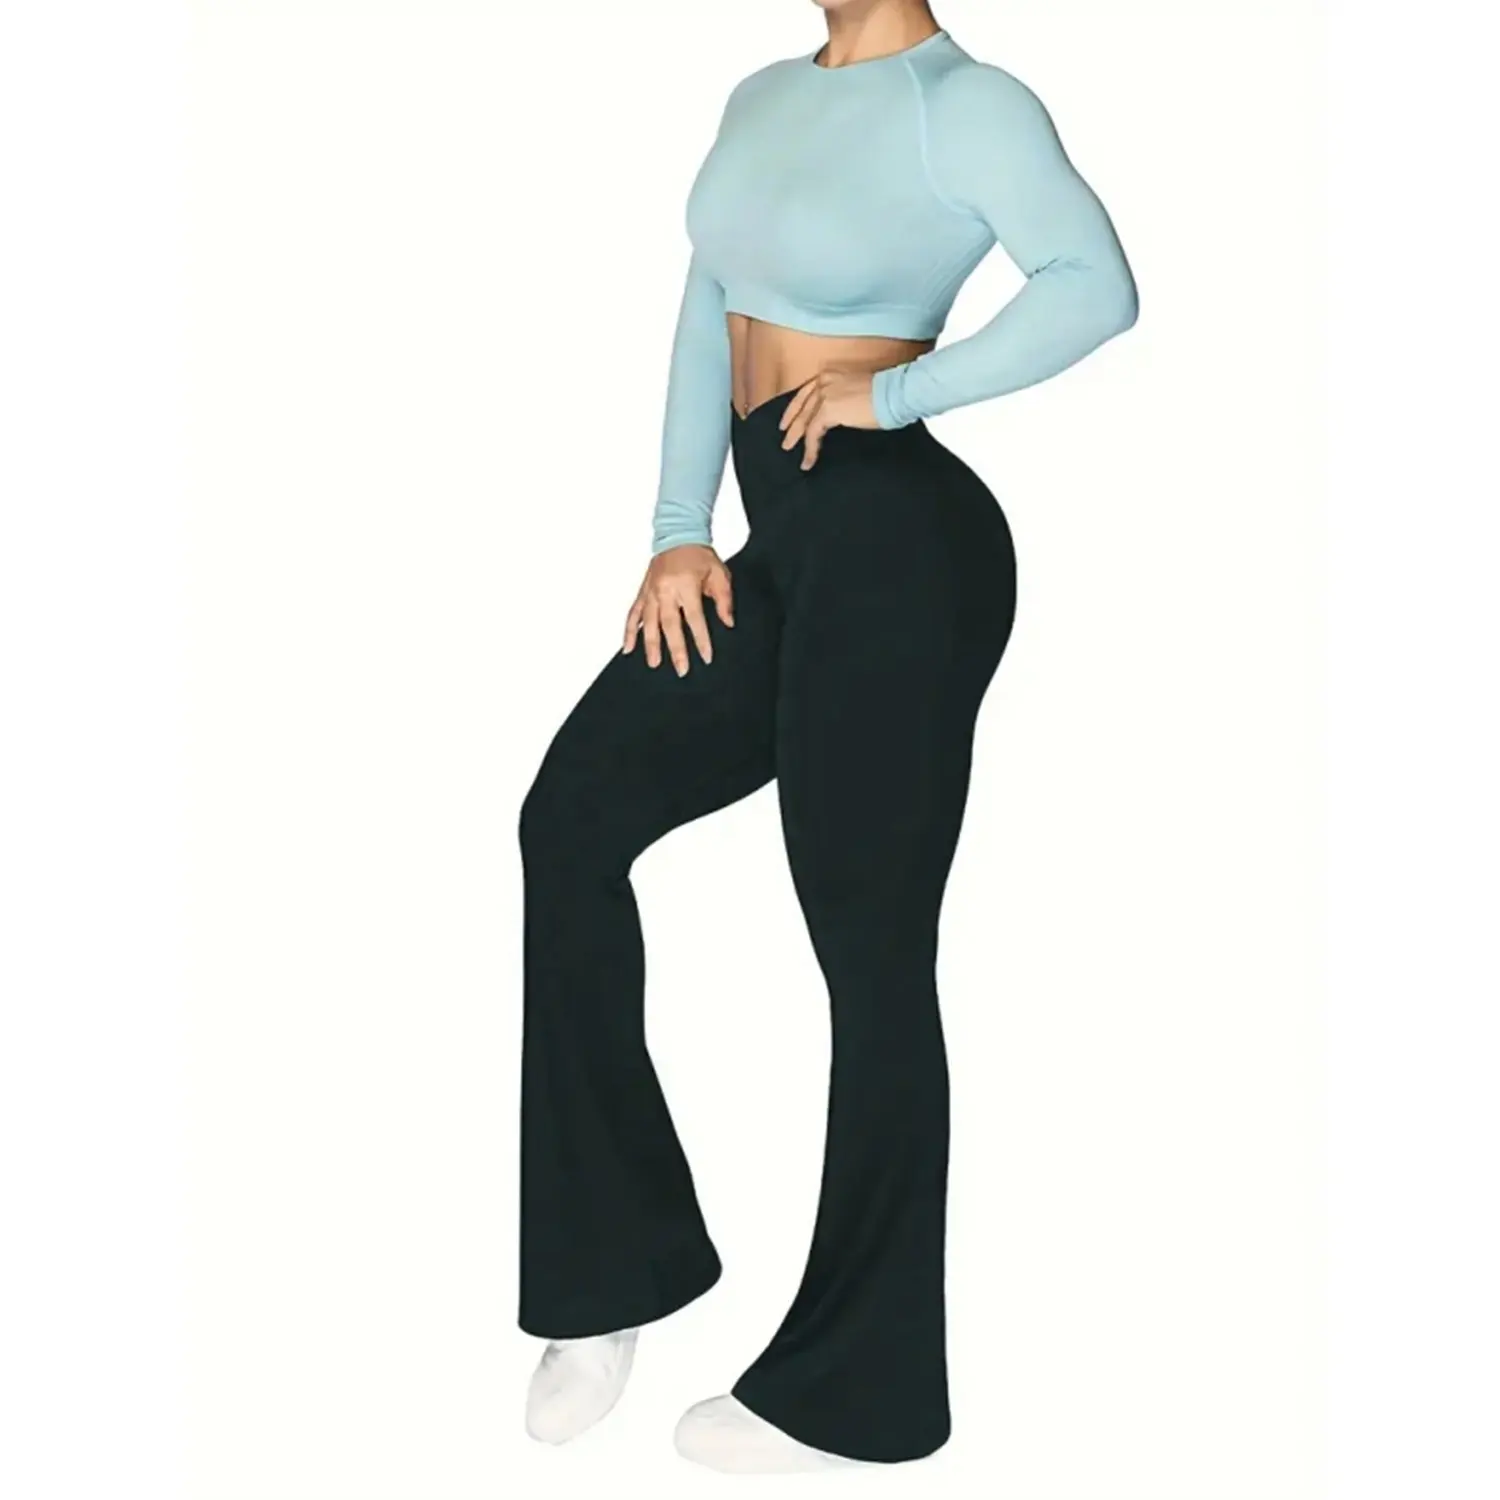 Celana Yoga ketat berkerut, celana ketat musim dingin termal, celana Yoga berkobar, produk baru, legging ukuran besar